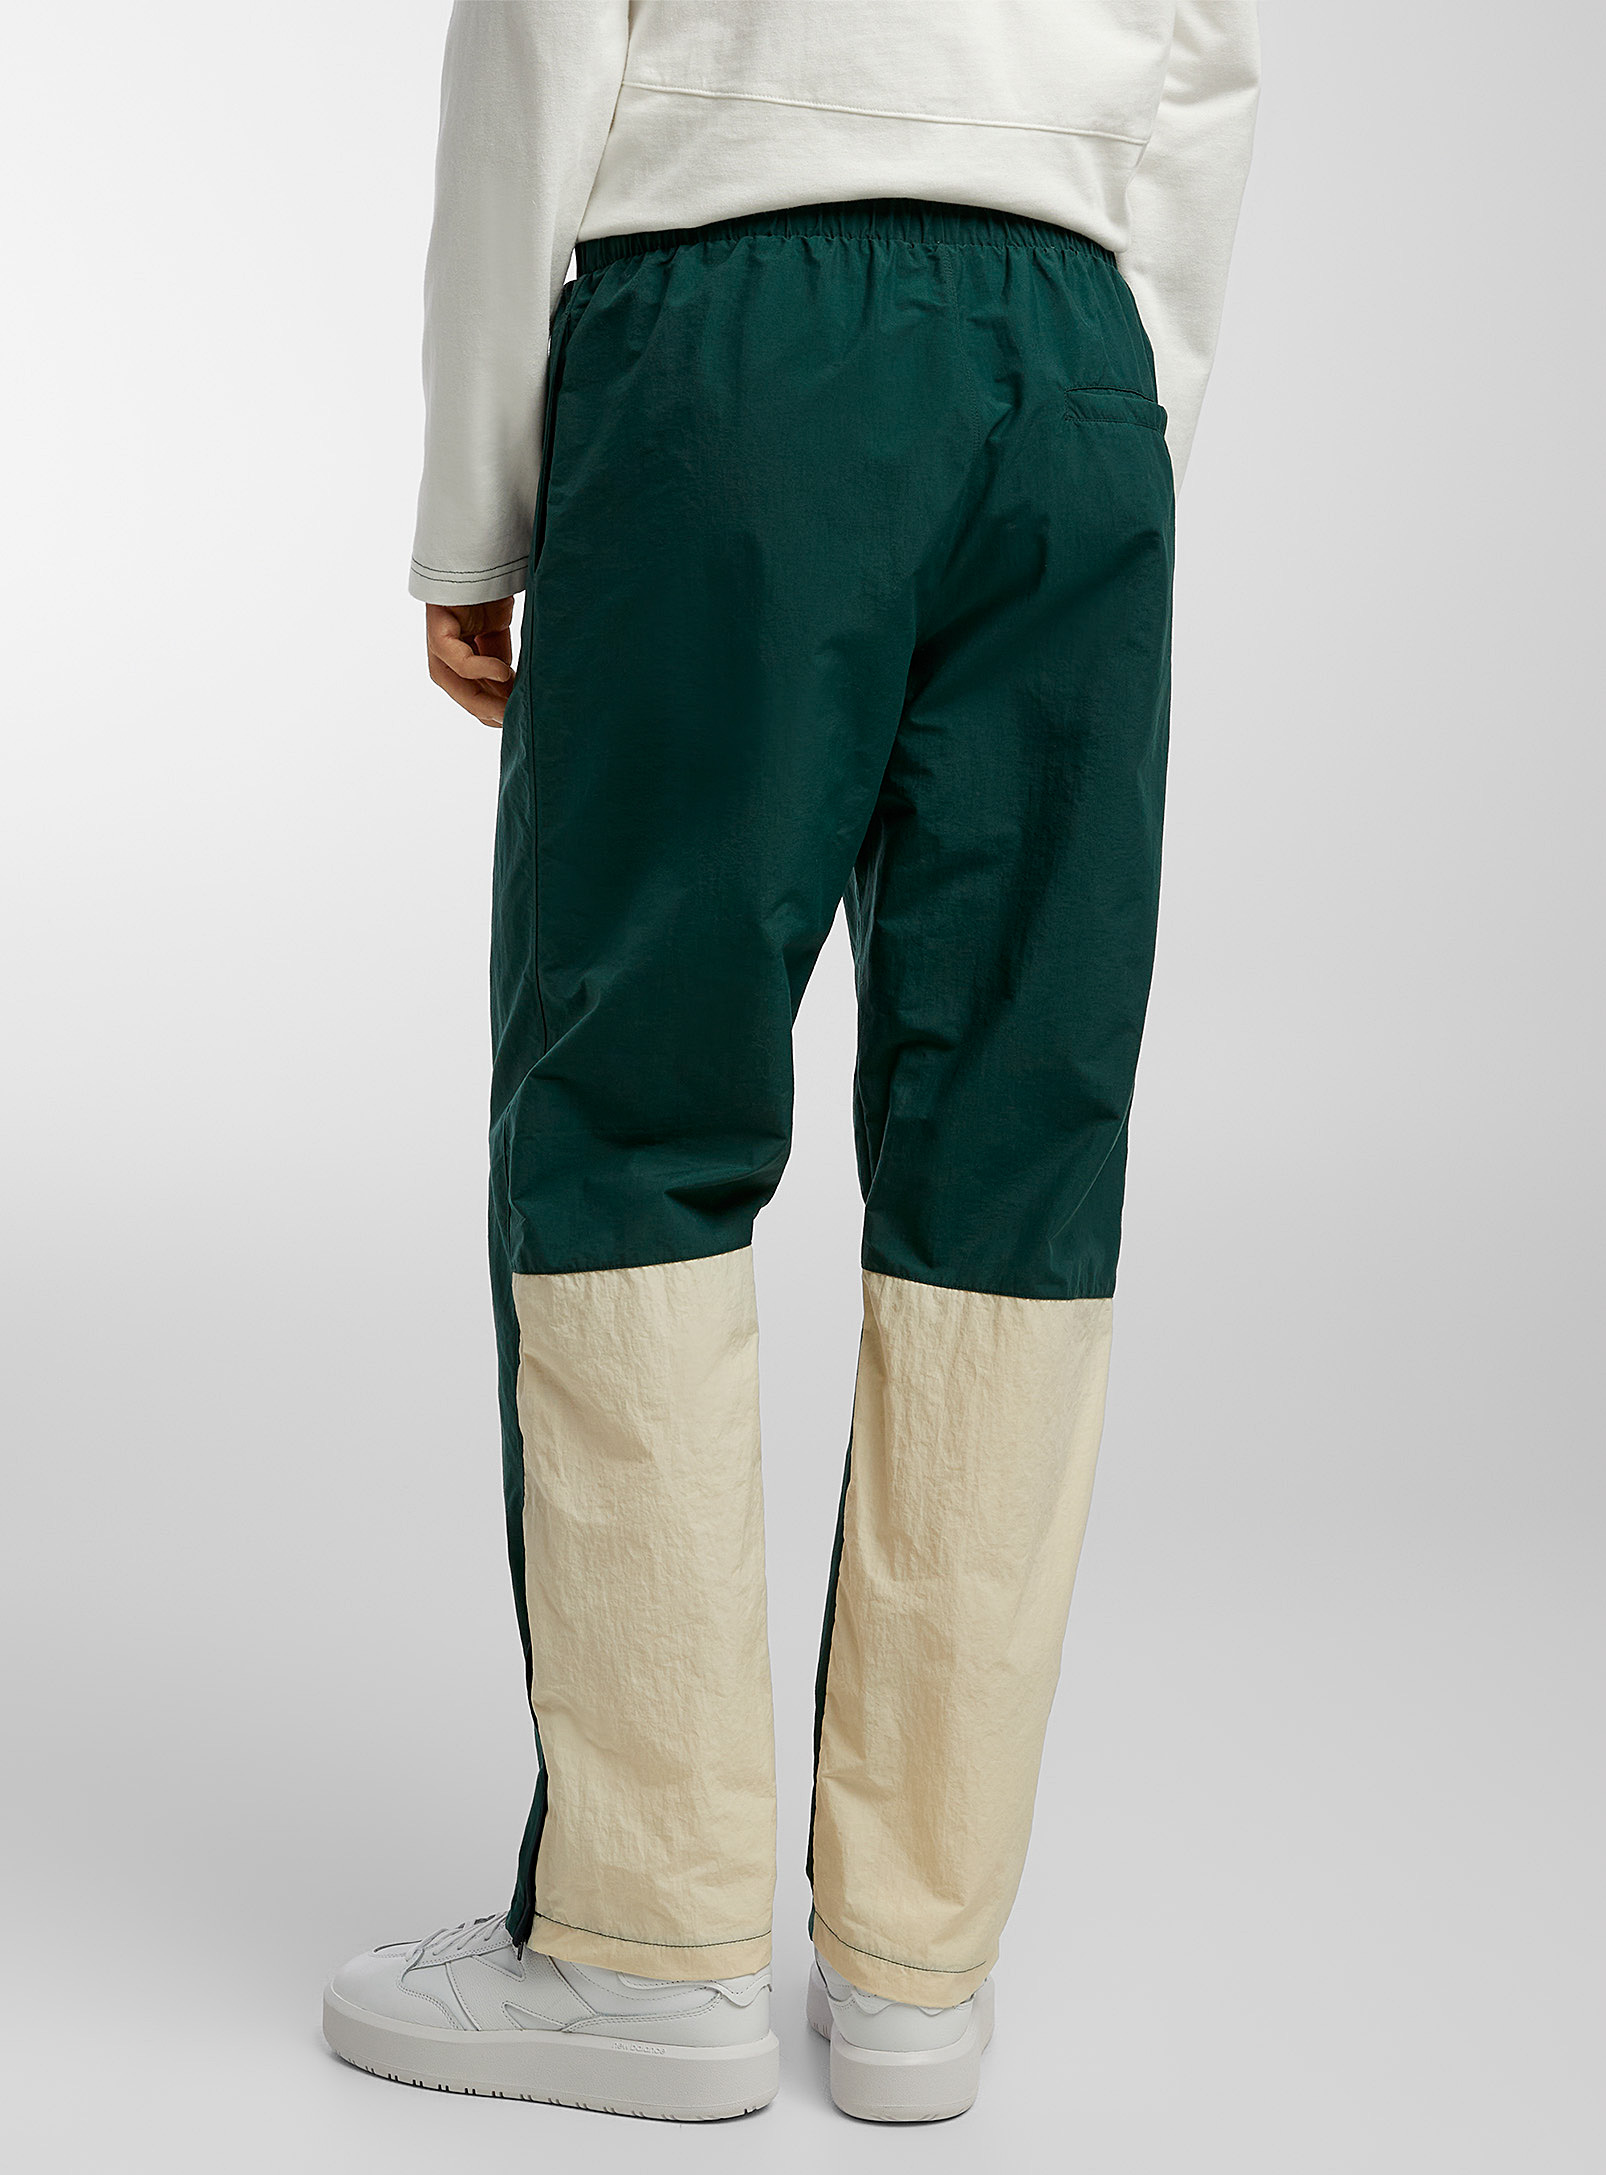 Palmes - Le pantalon de survêtement Vichi blocs couleurs